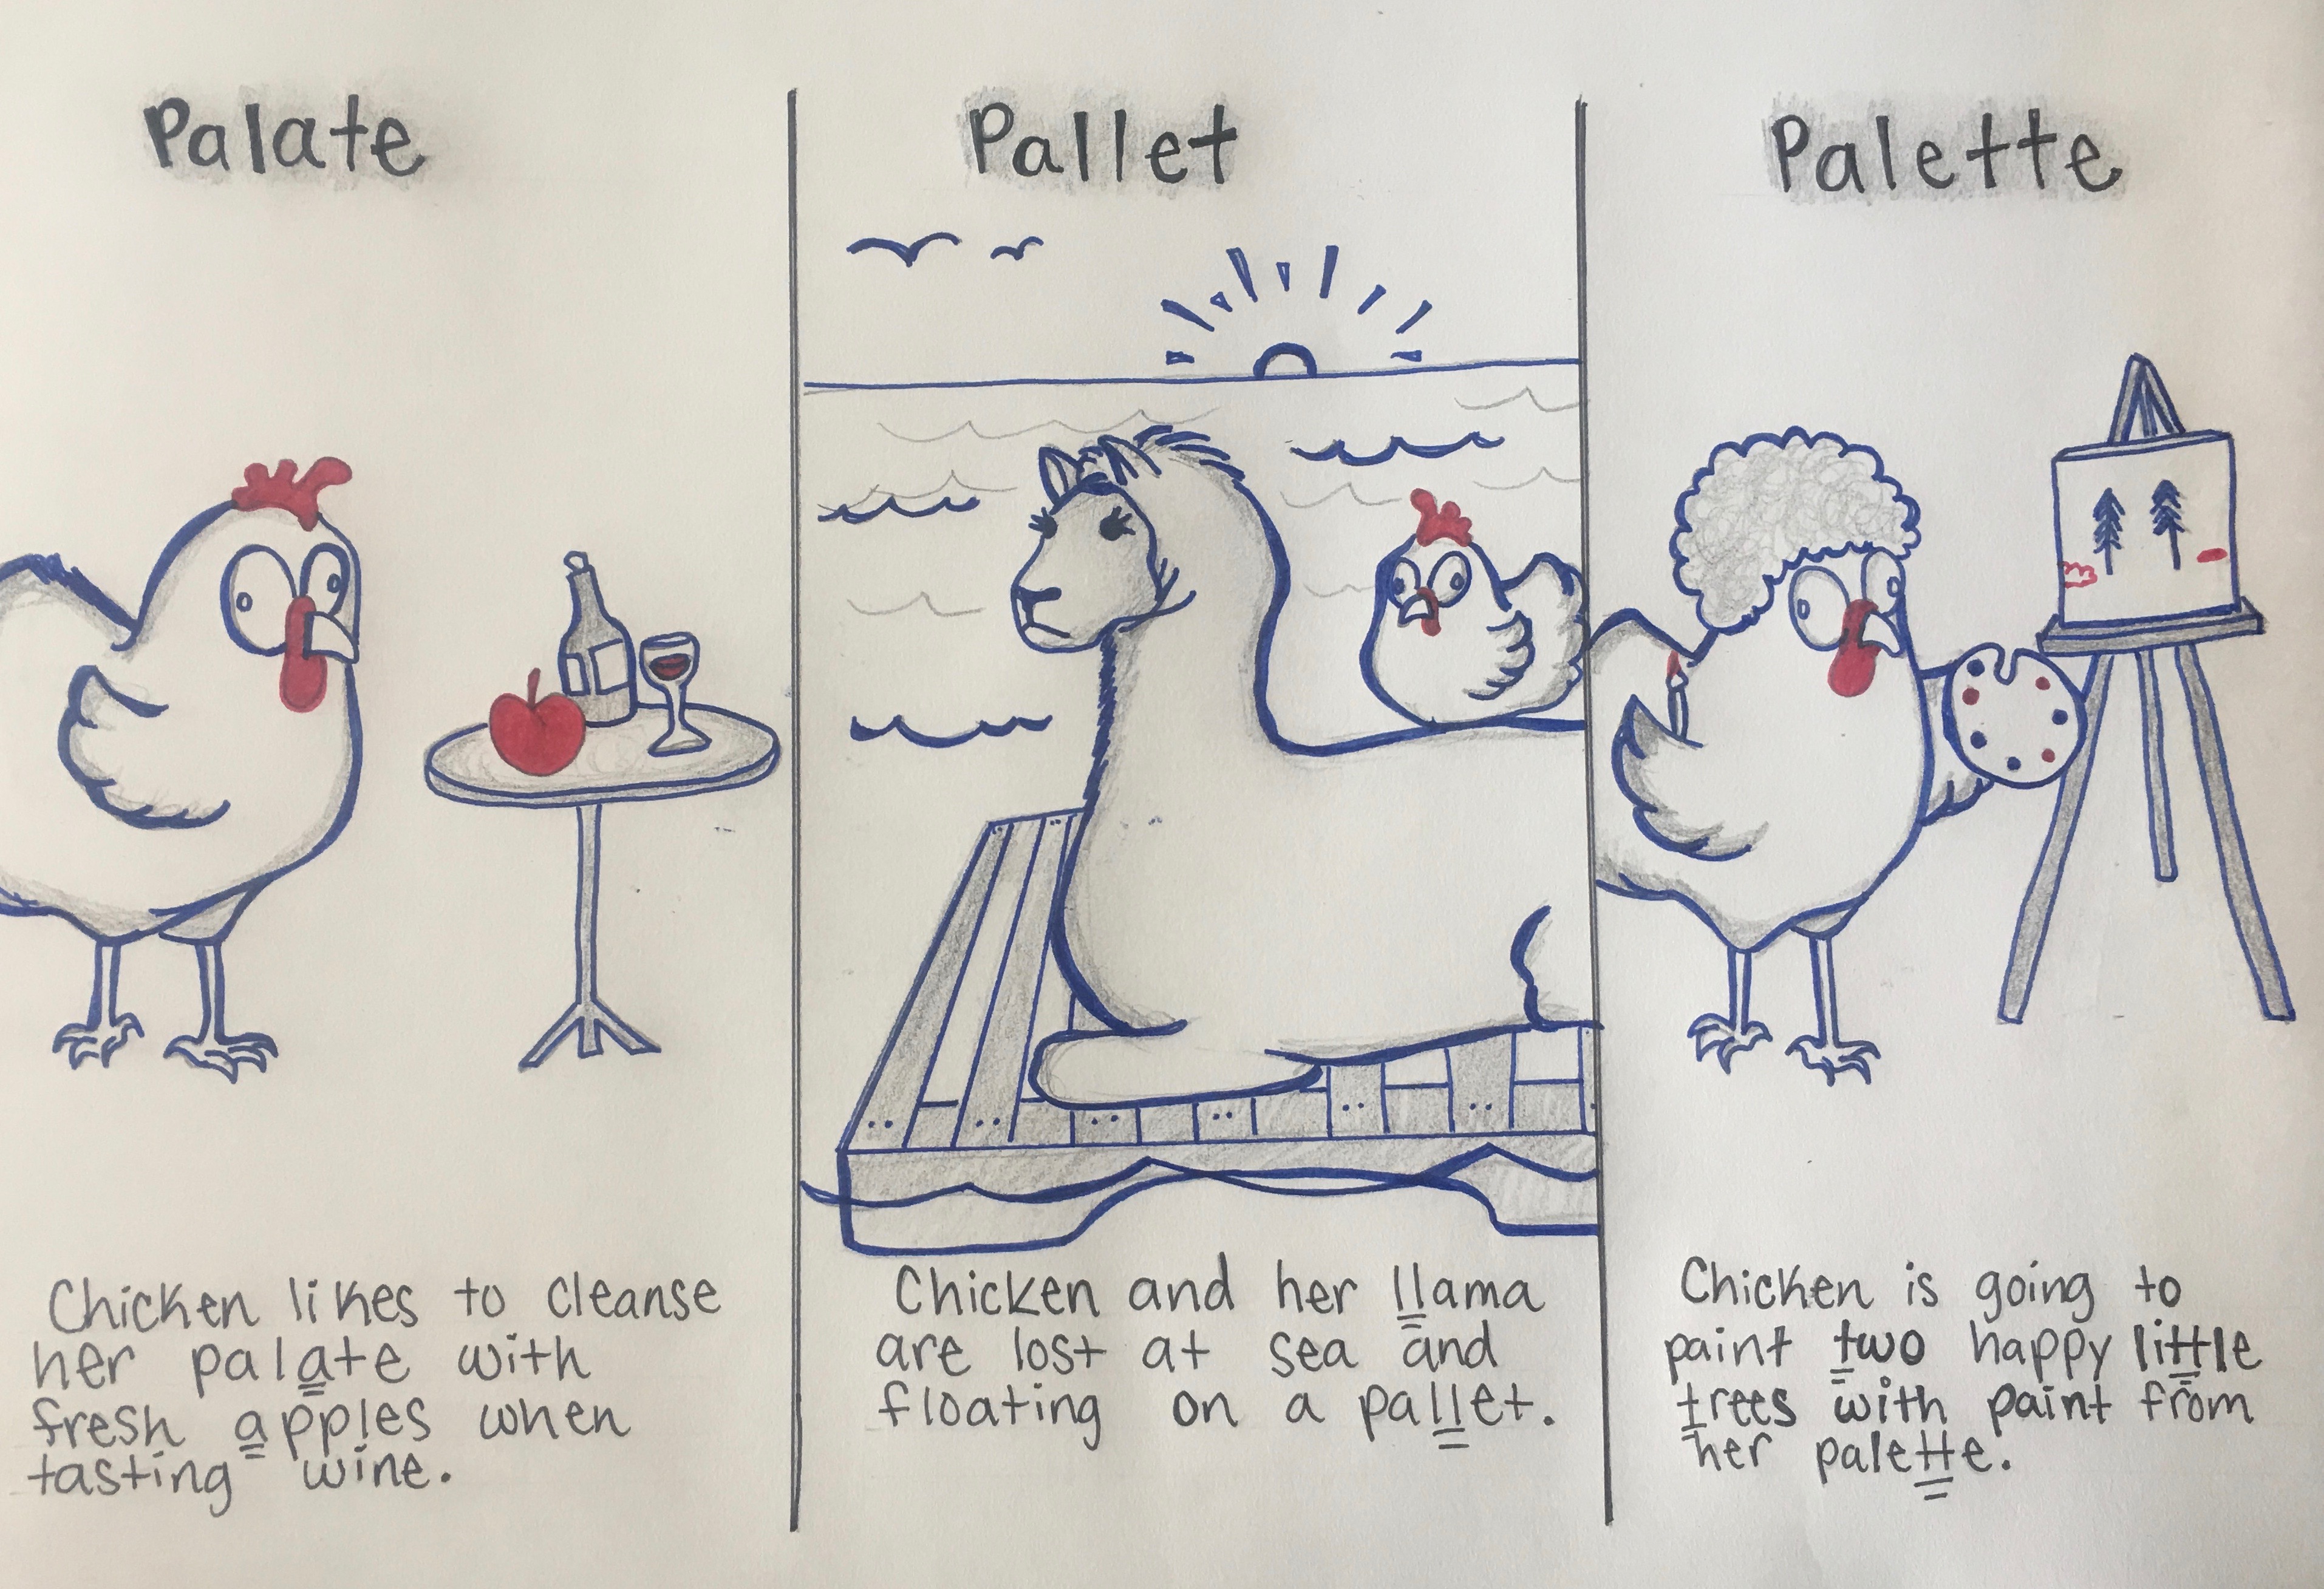 Palate Pallet v Palette - The Grammar Chicken